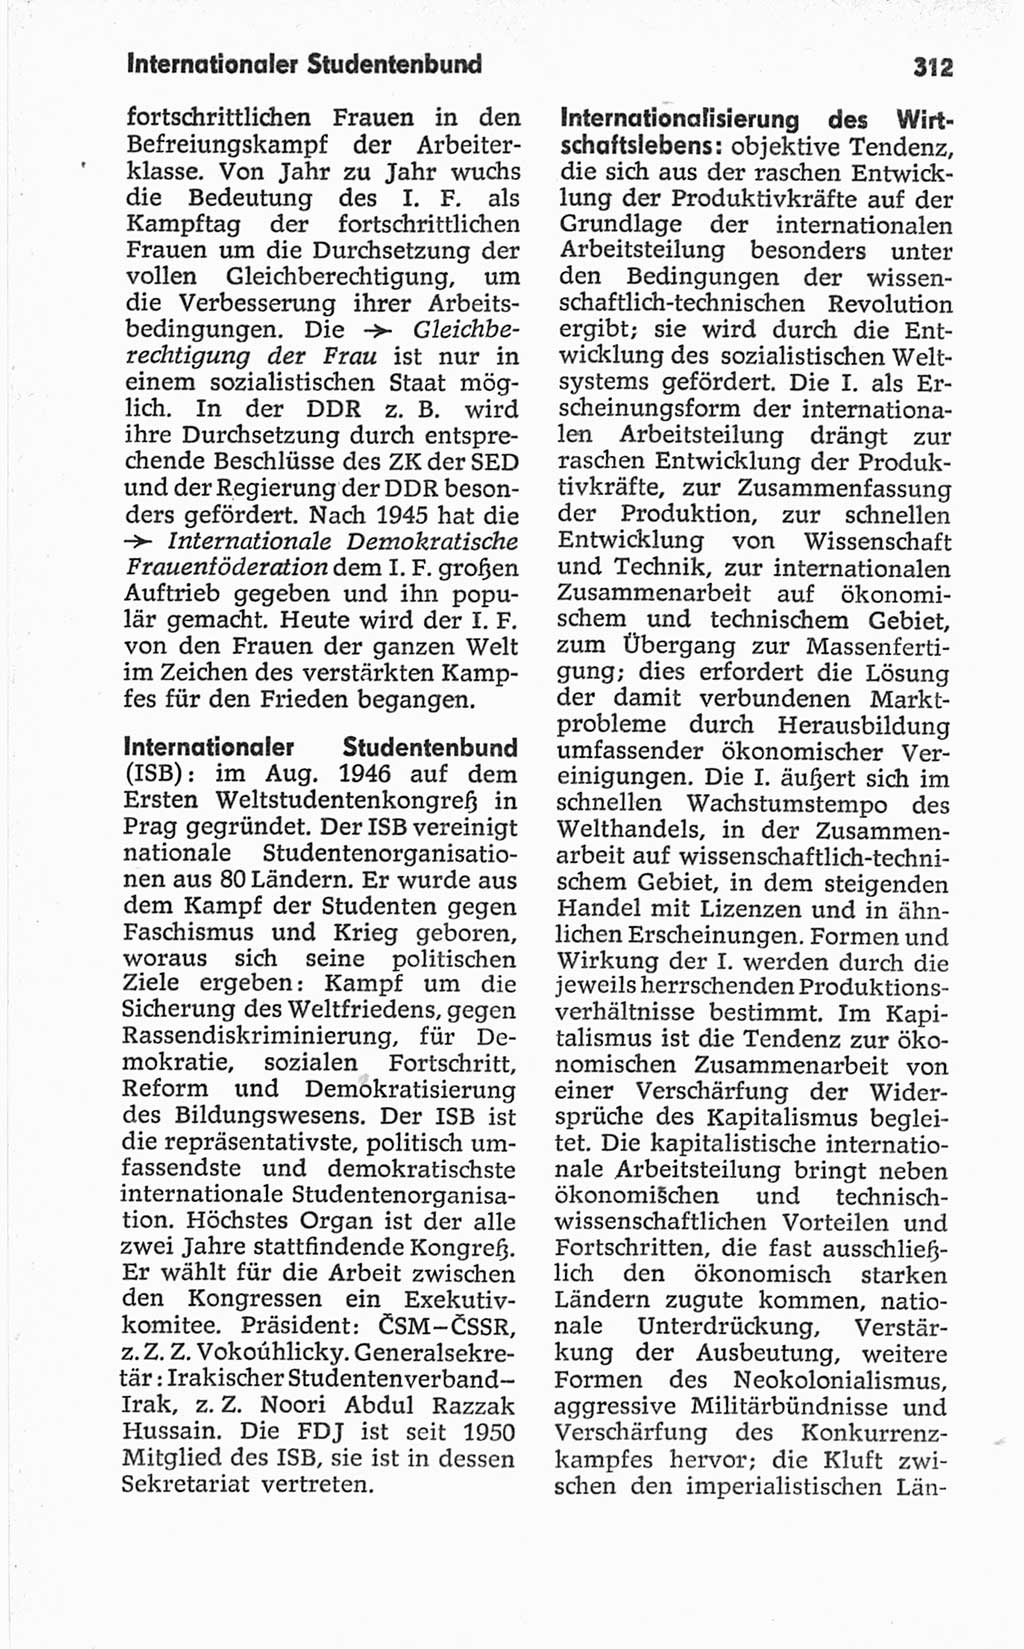 Kleines politisches Wörterbuch [Deutsche Demokratische Republik (DDR)] 1967, Seite 312 (Kl. pol. Wb. DDR 1967, S. 312)